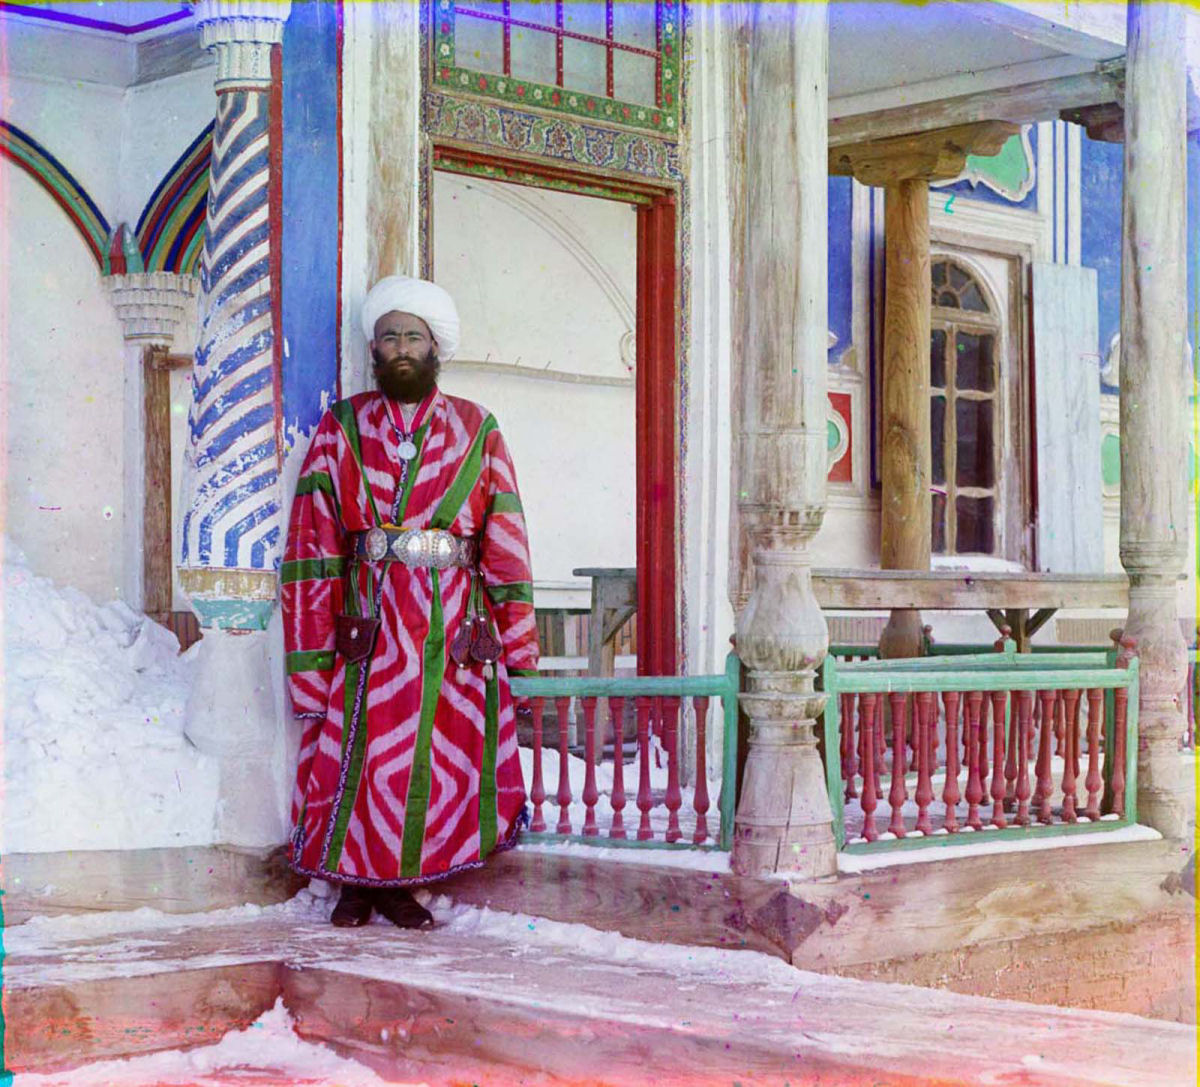 O Uzbequistão da era czarista capturado em raras fotos coloridas, entre 1907 e 1911 12